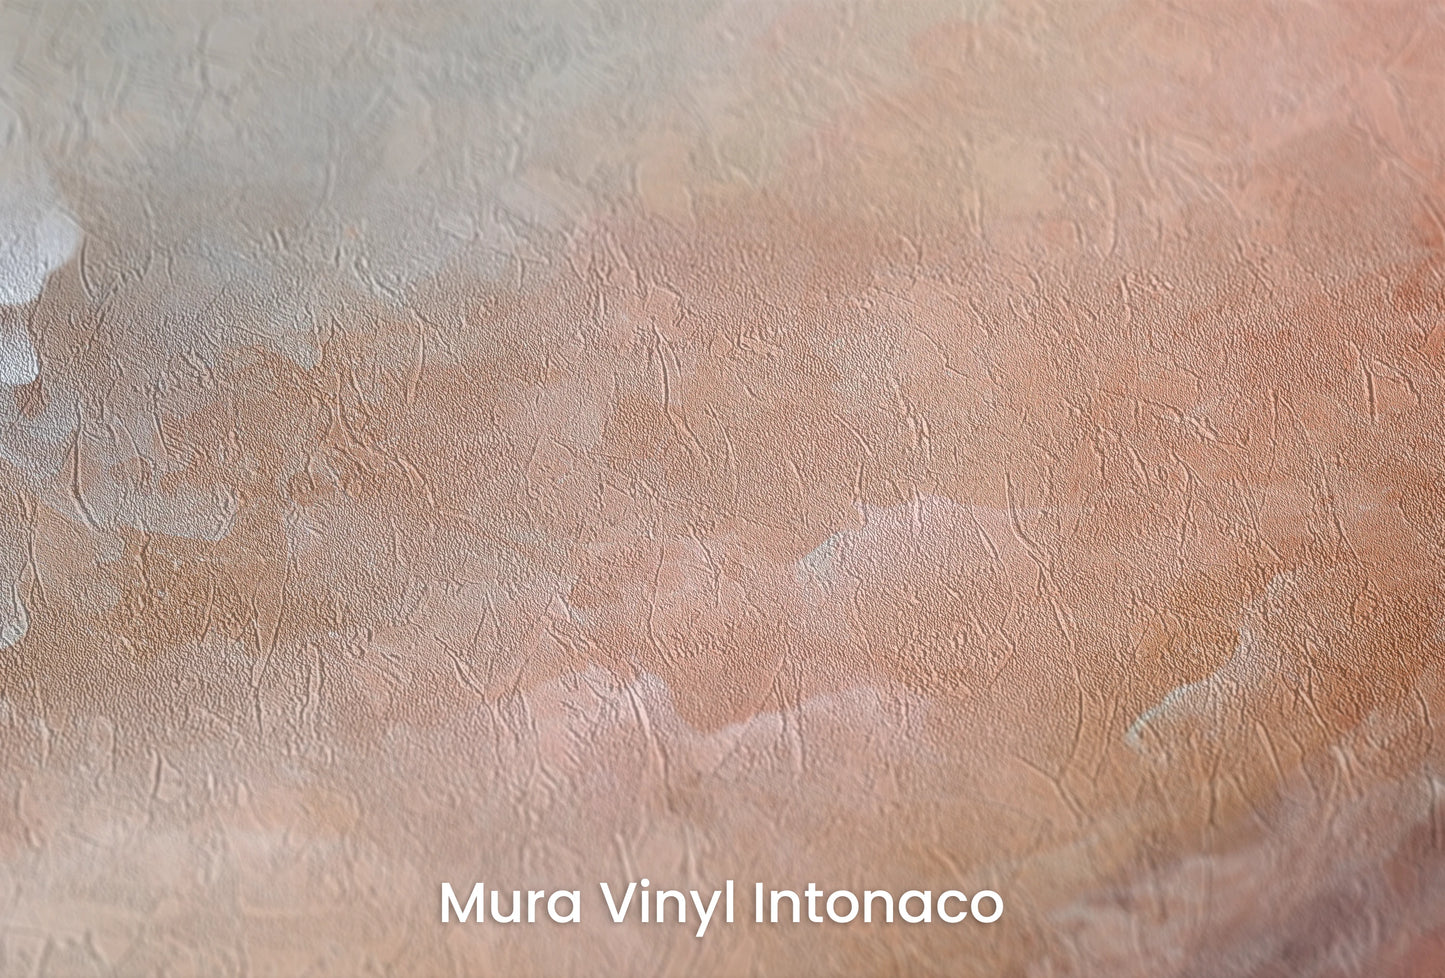 Zbliżenie na artystyczną fototapetę o nazwie Lunar Silence na podłożu Mura Vinyl Intonaco - struktura tartego tynku.